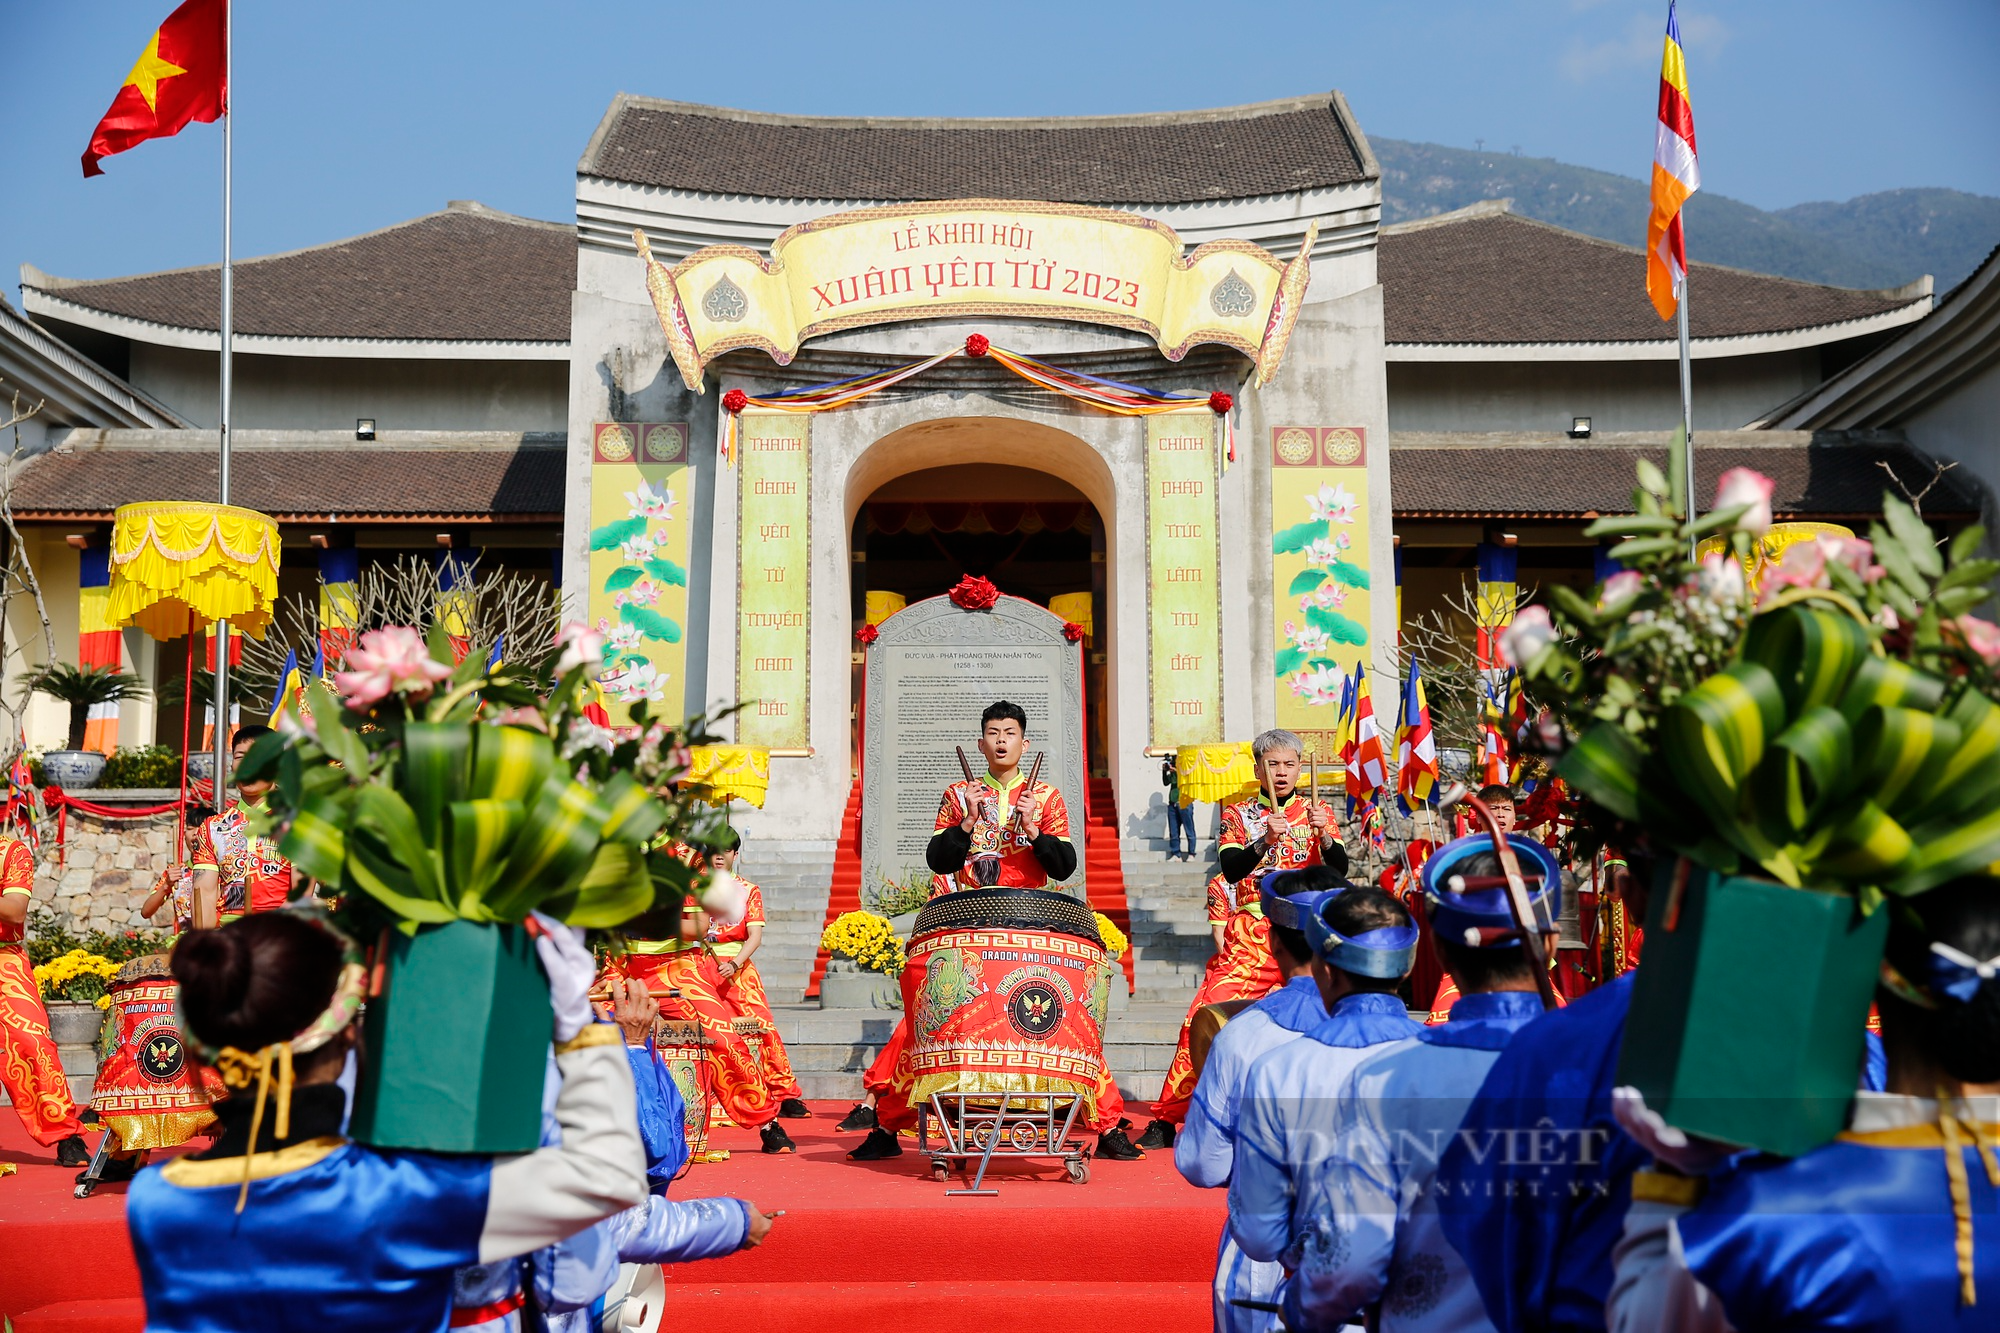 Đặc sắc các nghi lễ khai hội xuân Yên Tử năm 2023  - Ảnh 7.